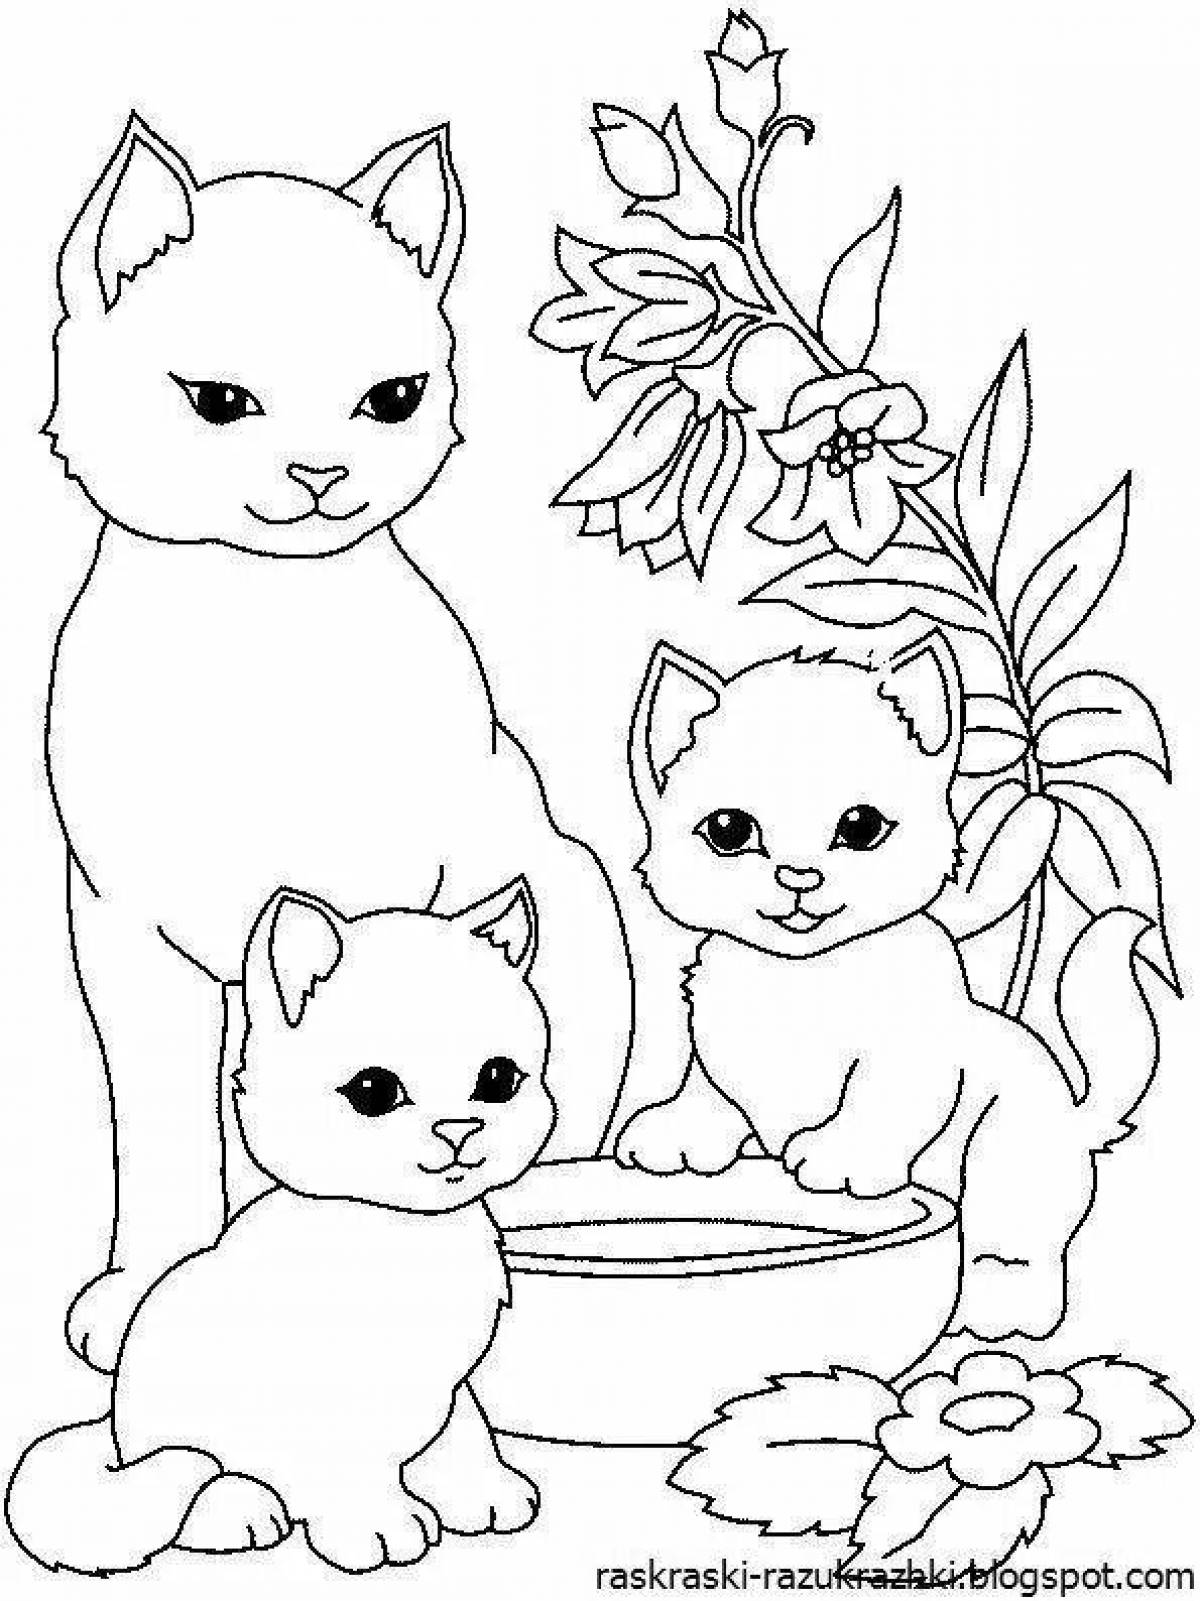 Раскраска котенок для детей 4 5 лет. Котенок. Раскраска. Раскраска. Котики. Раскраска кошечка. Окошко раскраска.